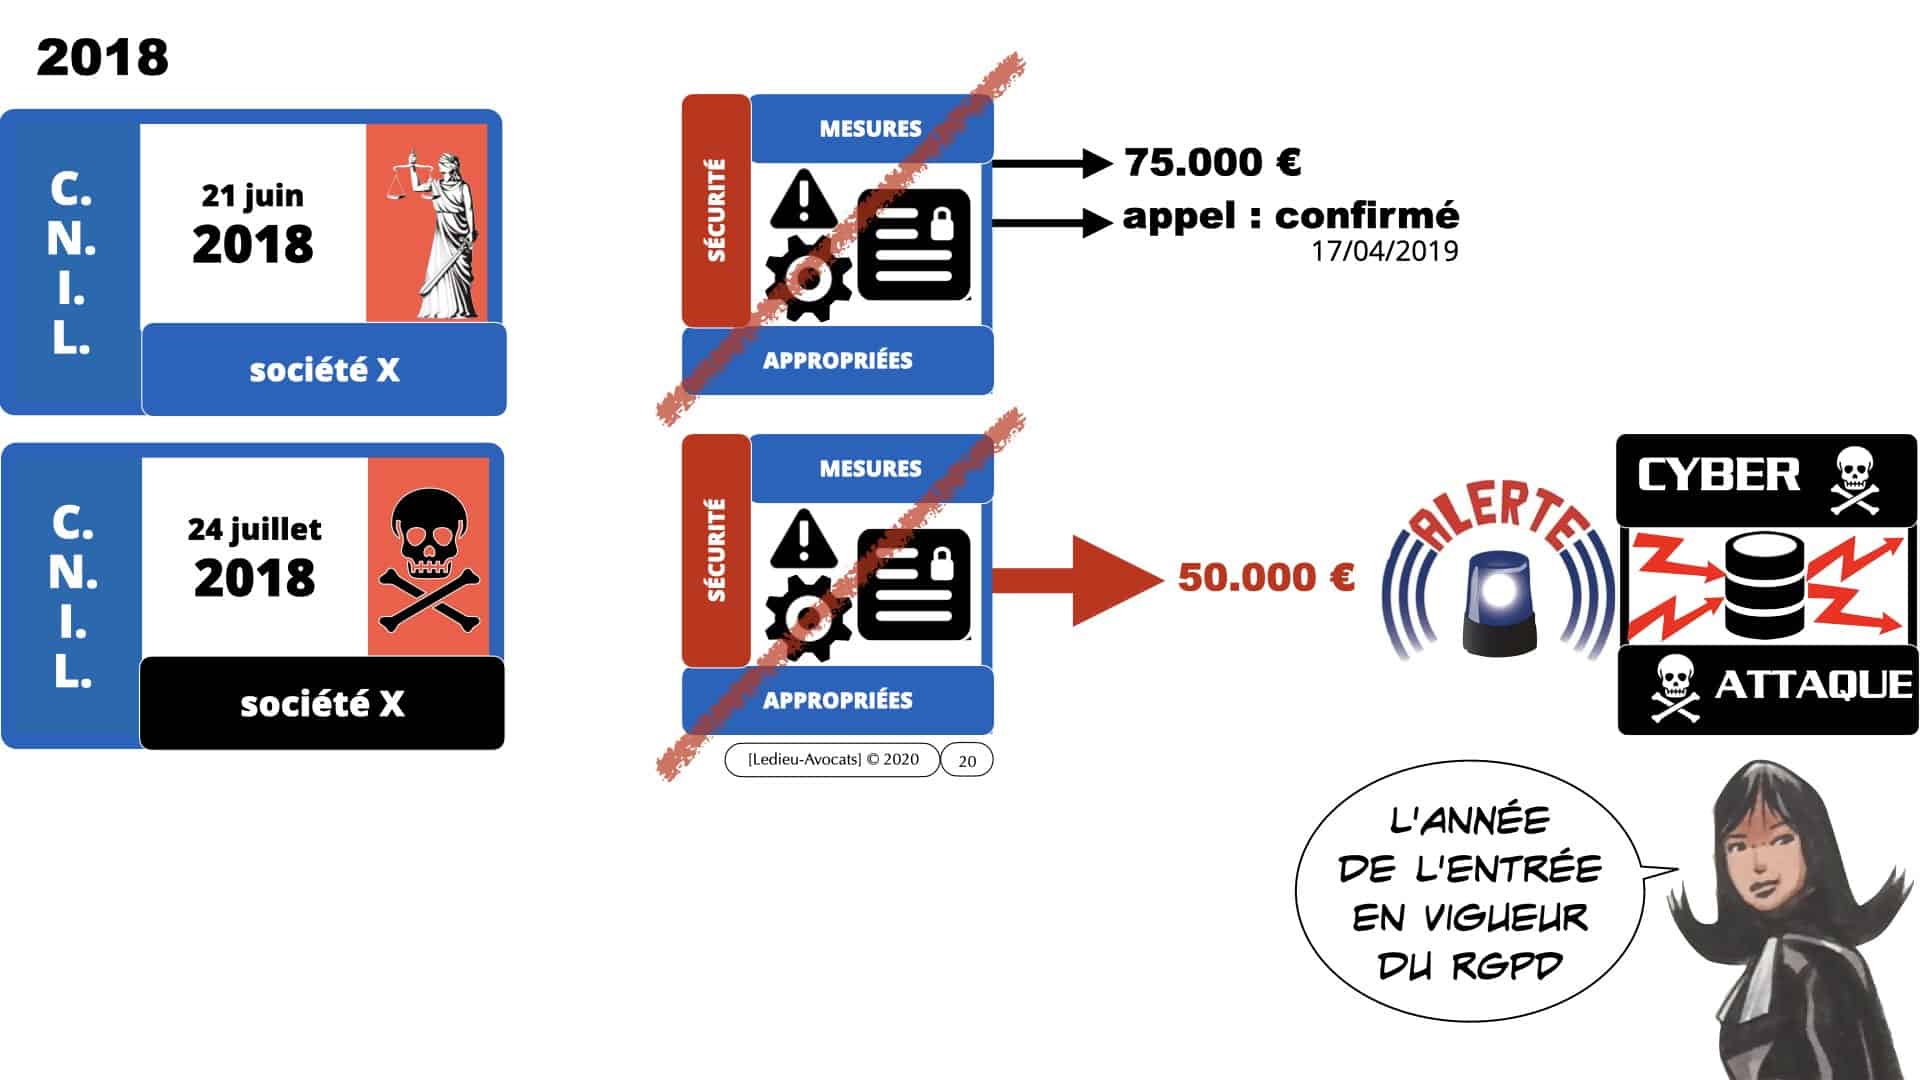 331 CYBER ATTAQUE malware vulnérabilité contrat BtoB © Ledieu-Avocats 30-03-2021 ***16:9***.020